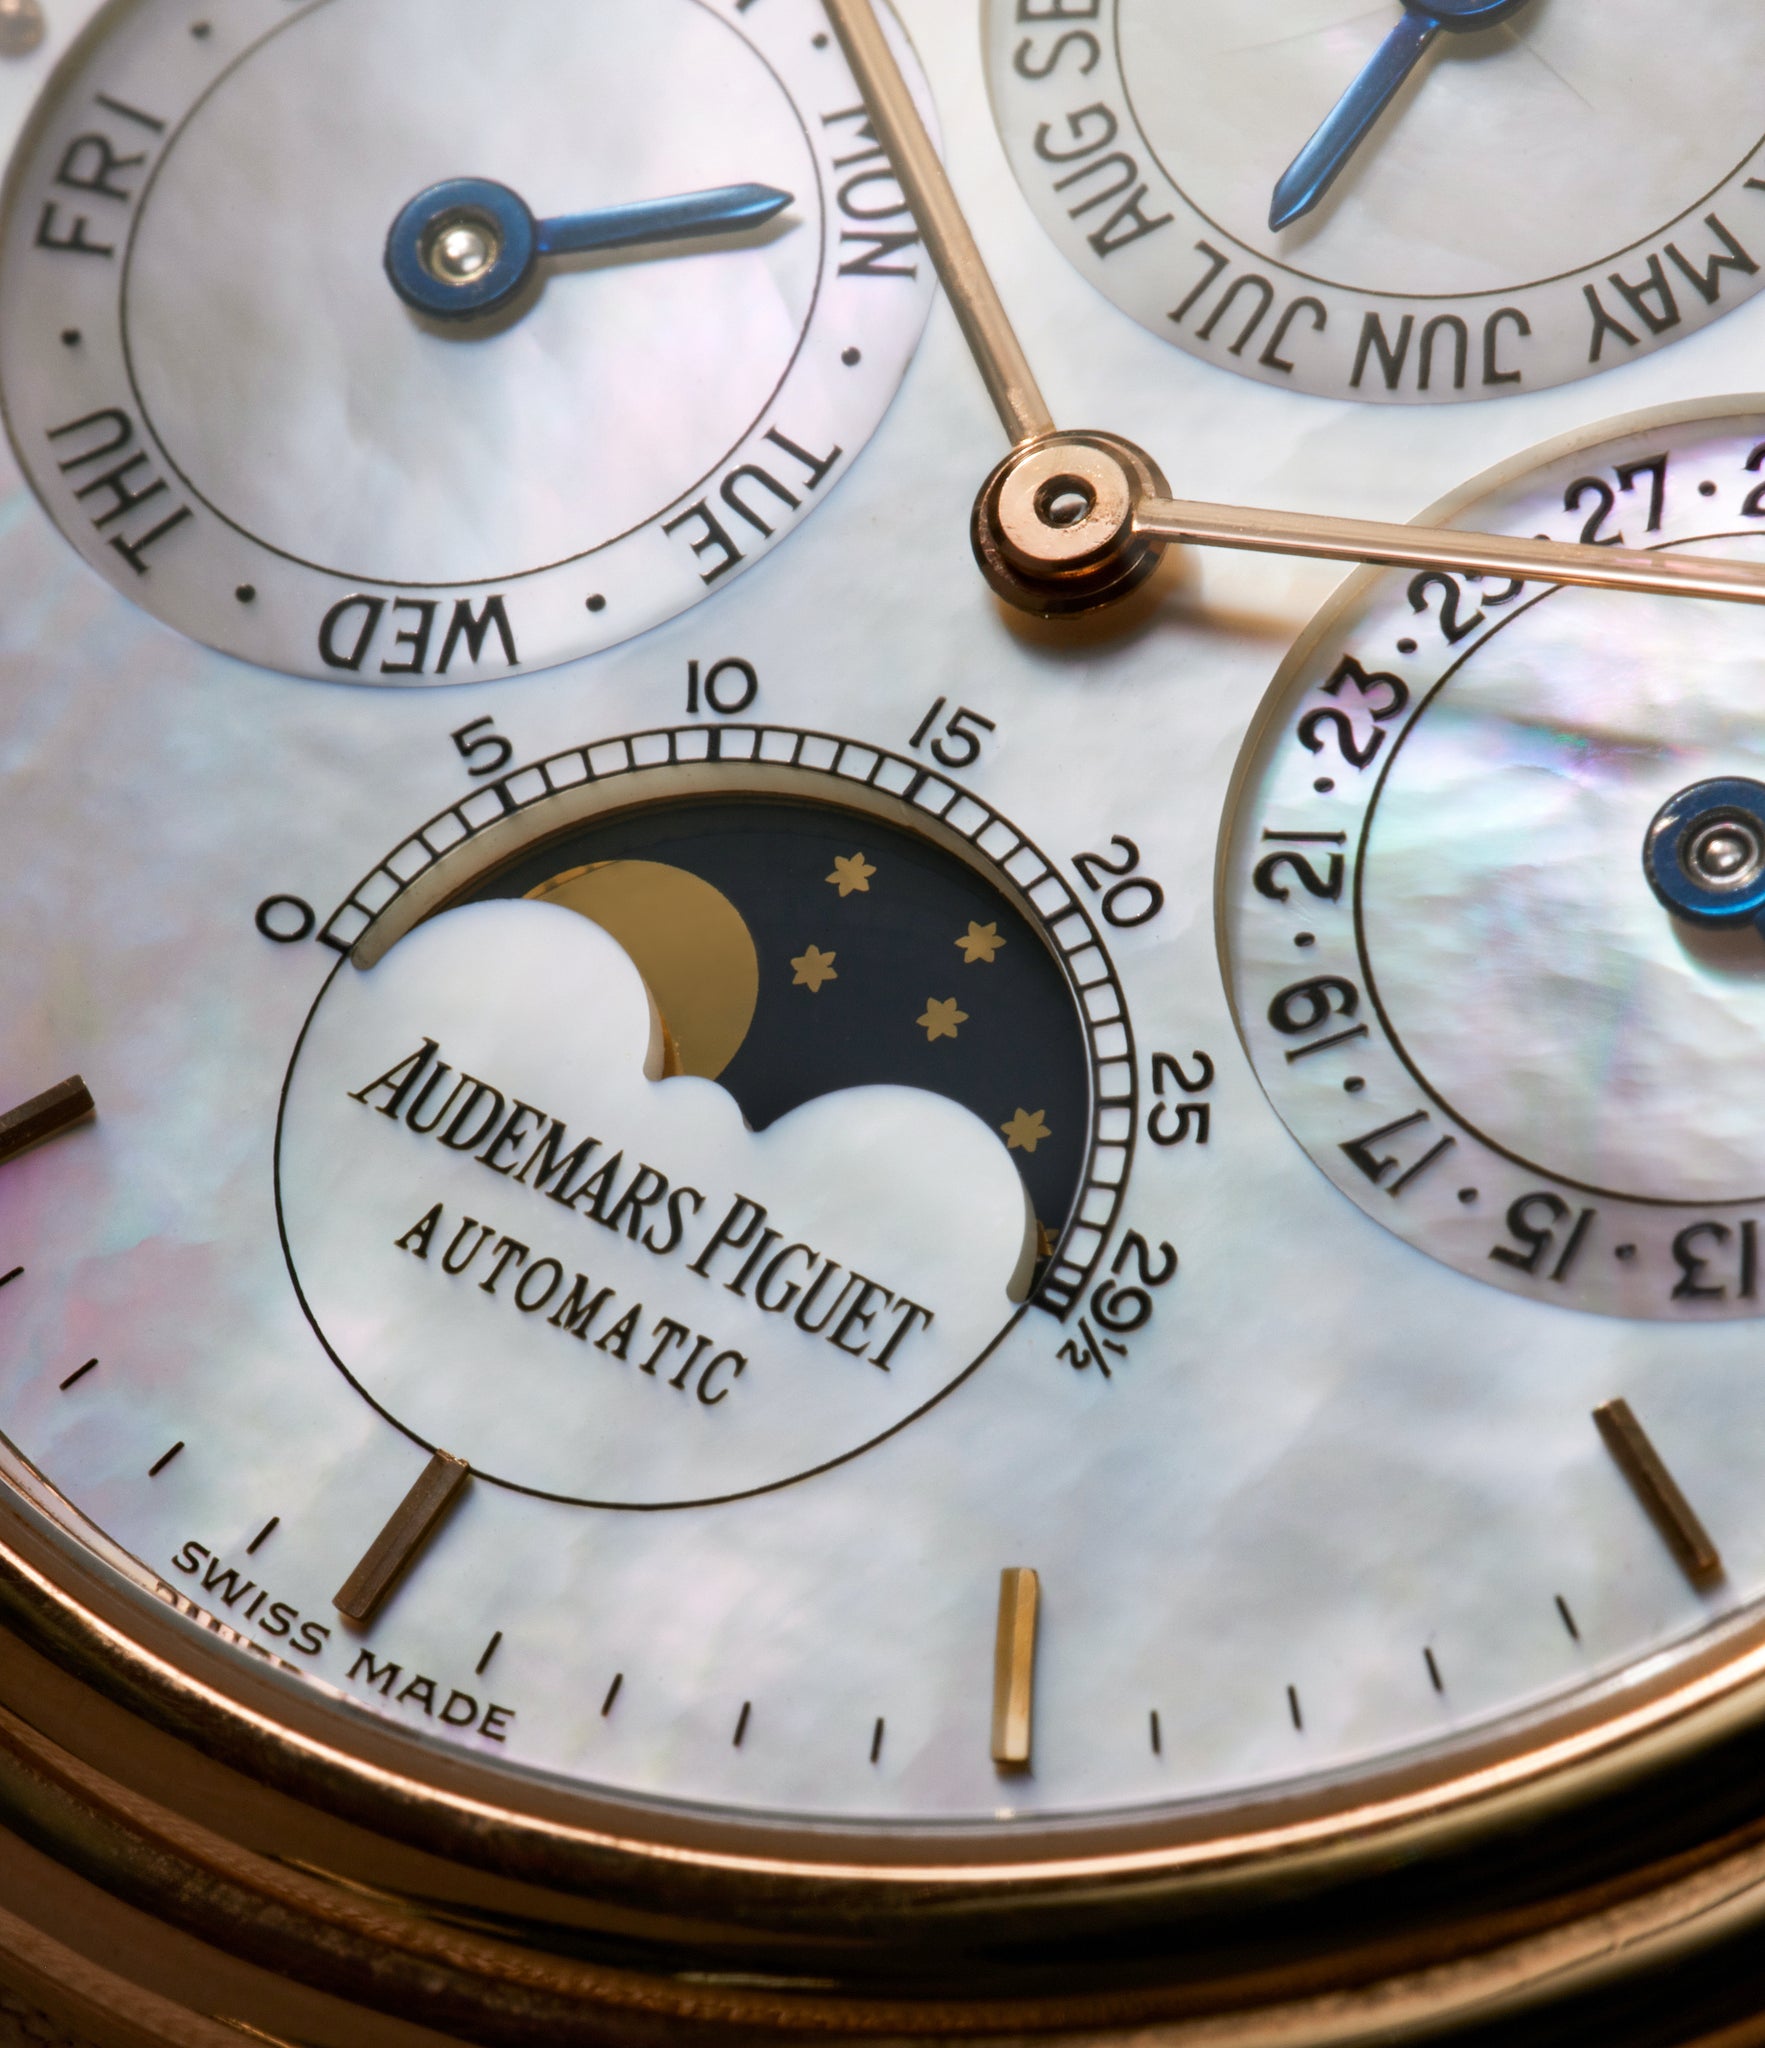 Audemars Piguet Quantième Perpétuel OR2566/002 Rose Gold preowned watch at A Collected Man London